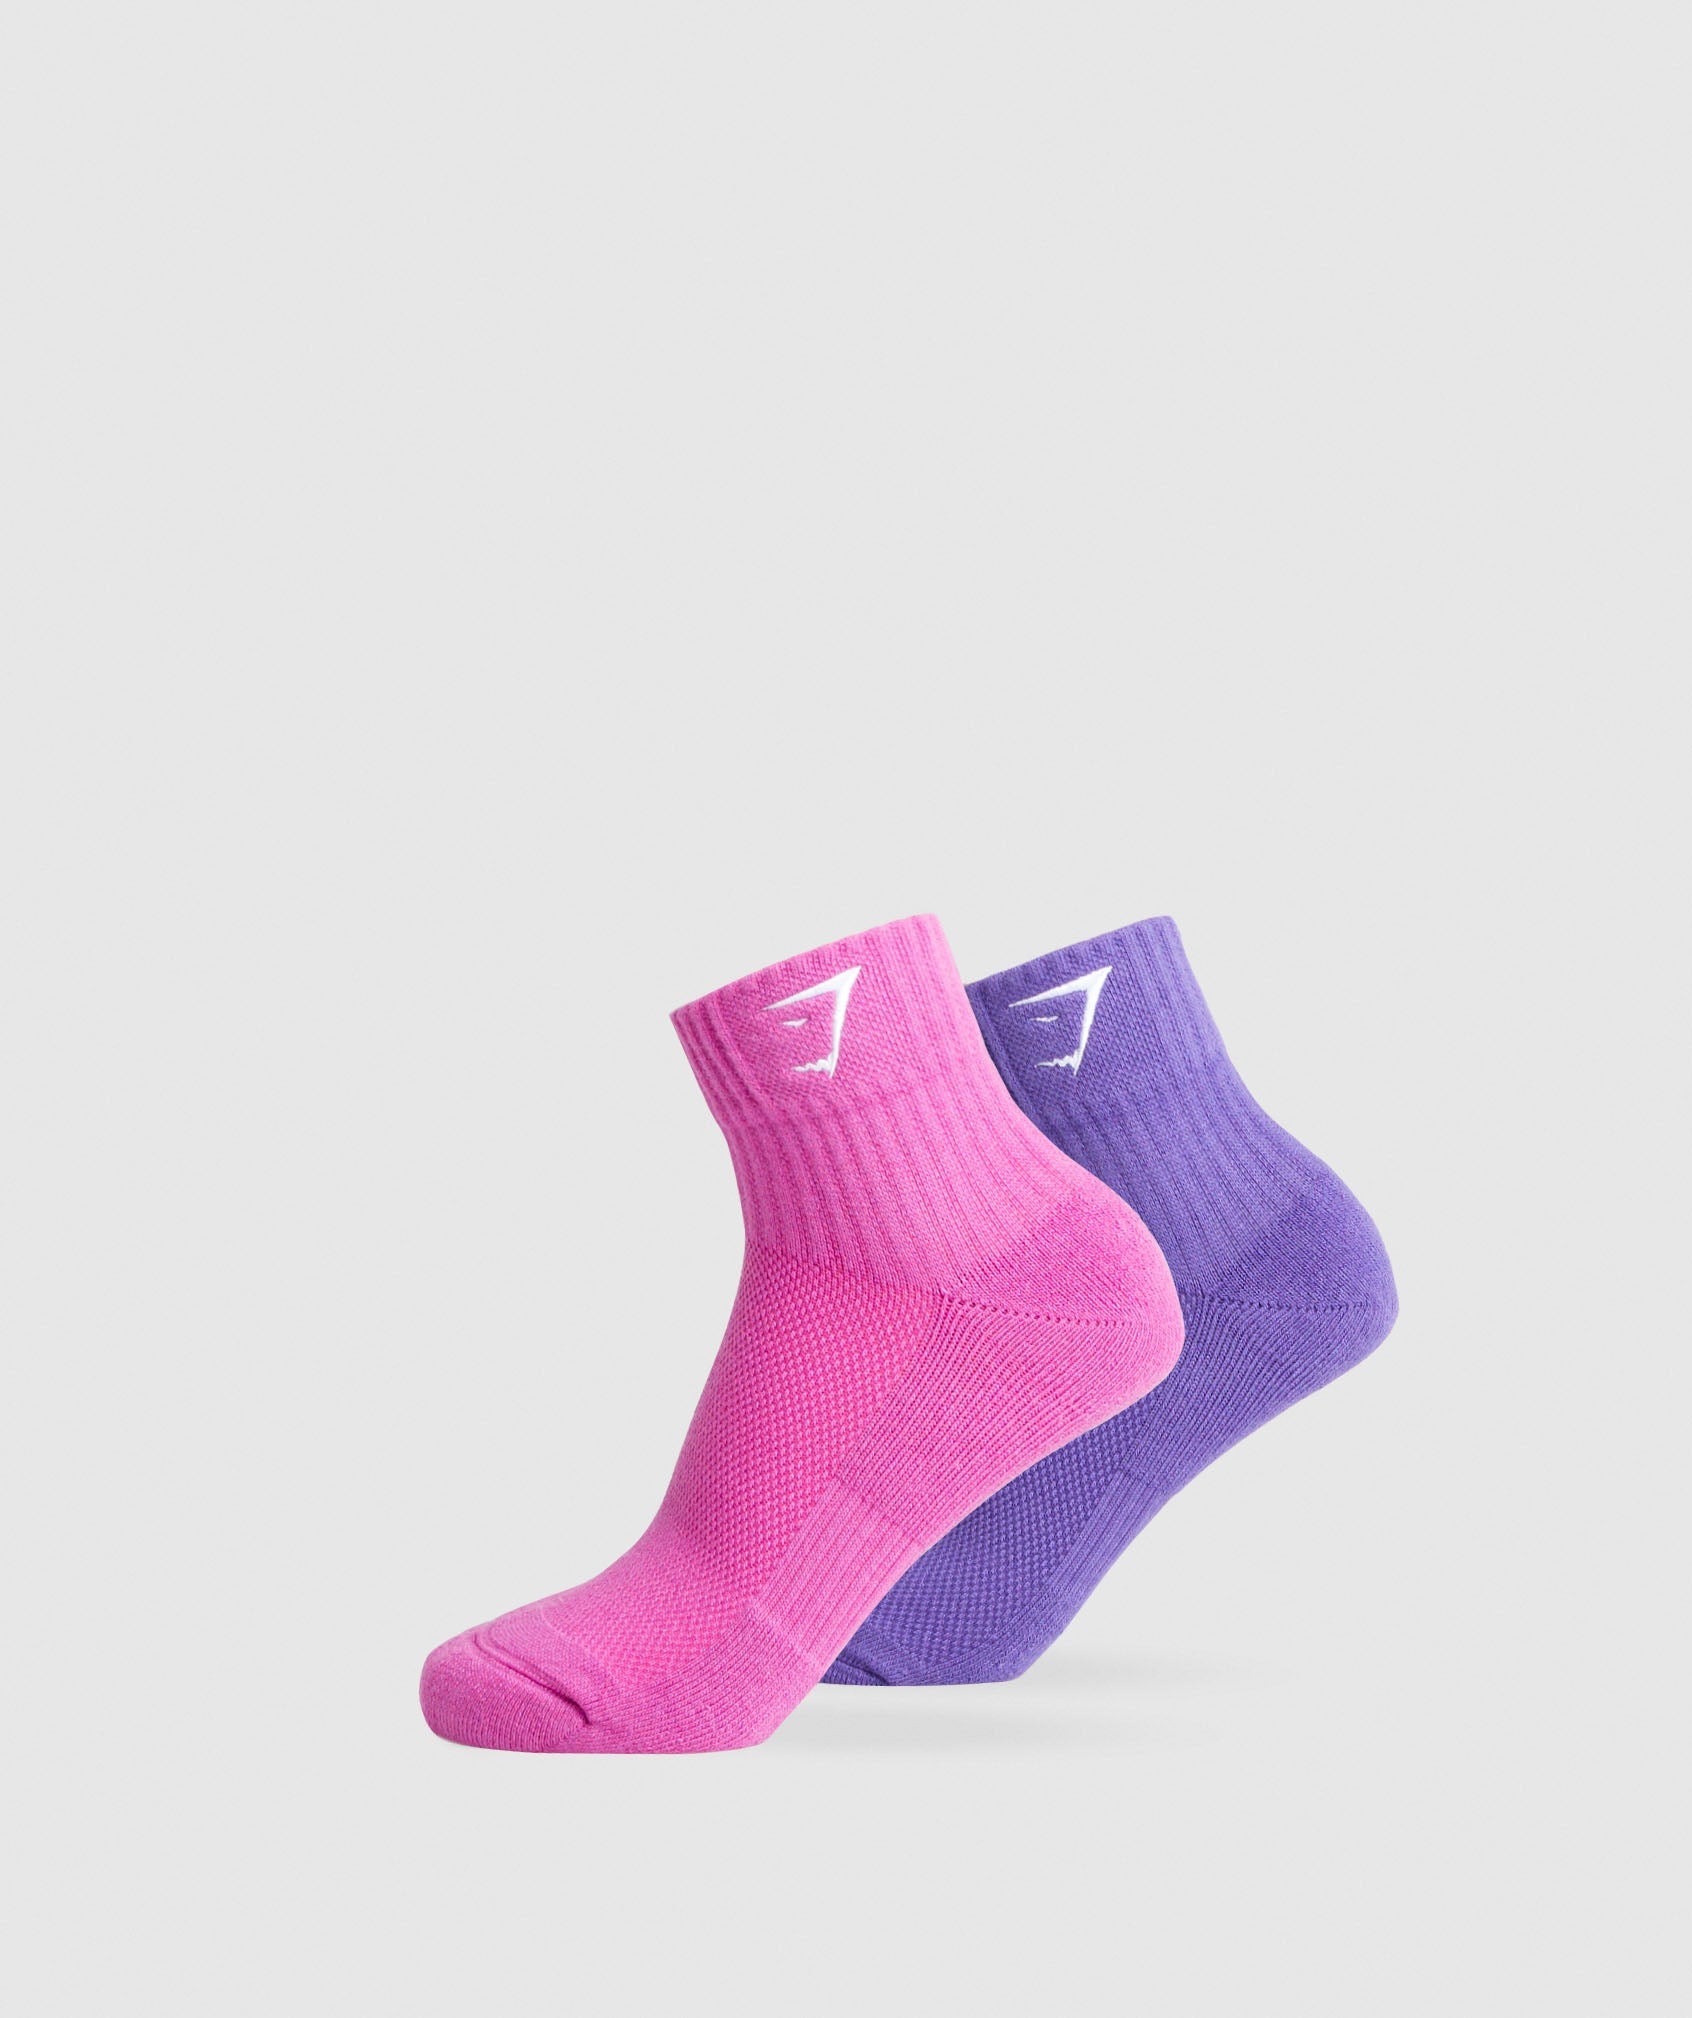 Sharkhead Embroidered Quarter Socks 2pk in Shelly Pink/Stellar Purple ist nicht auf Lager